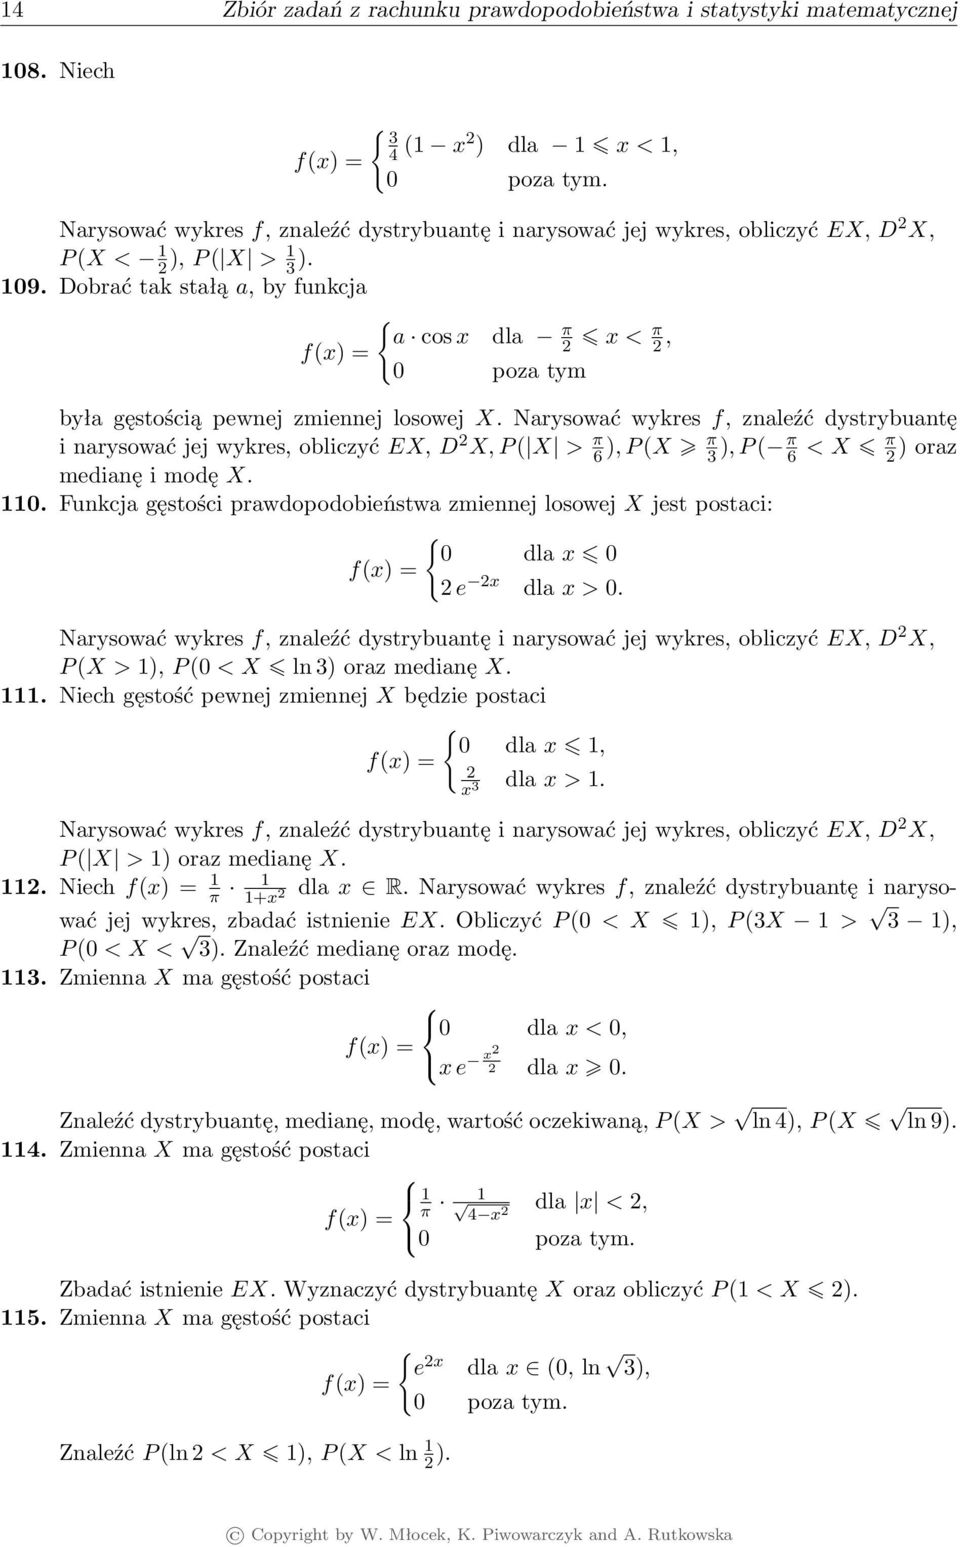 Dobrać tak stałą a, by funkcja { a cos x dla π f(x) = 2 x < π 2, 0 poza tym była gęstością pewnej zmiennej losowej X.